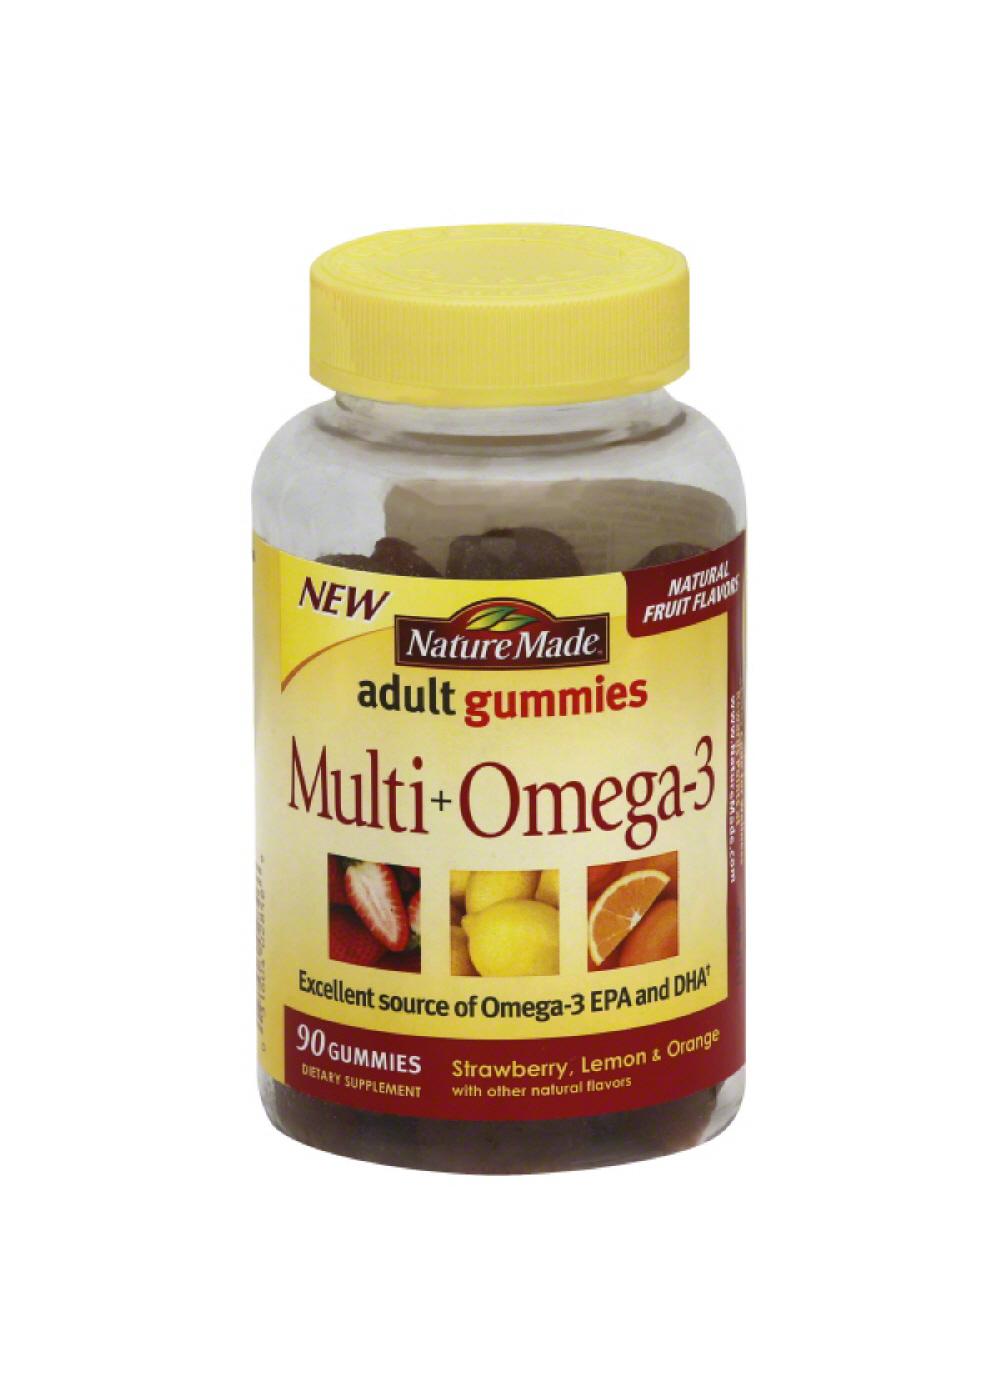 Nature Made Multi+Omega-3 Adult Gummies; image 1 of 2